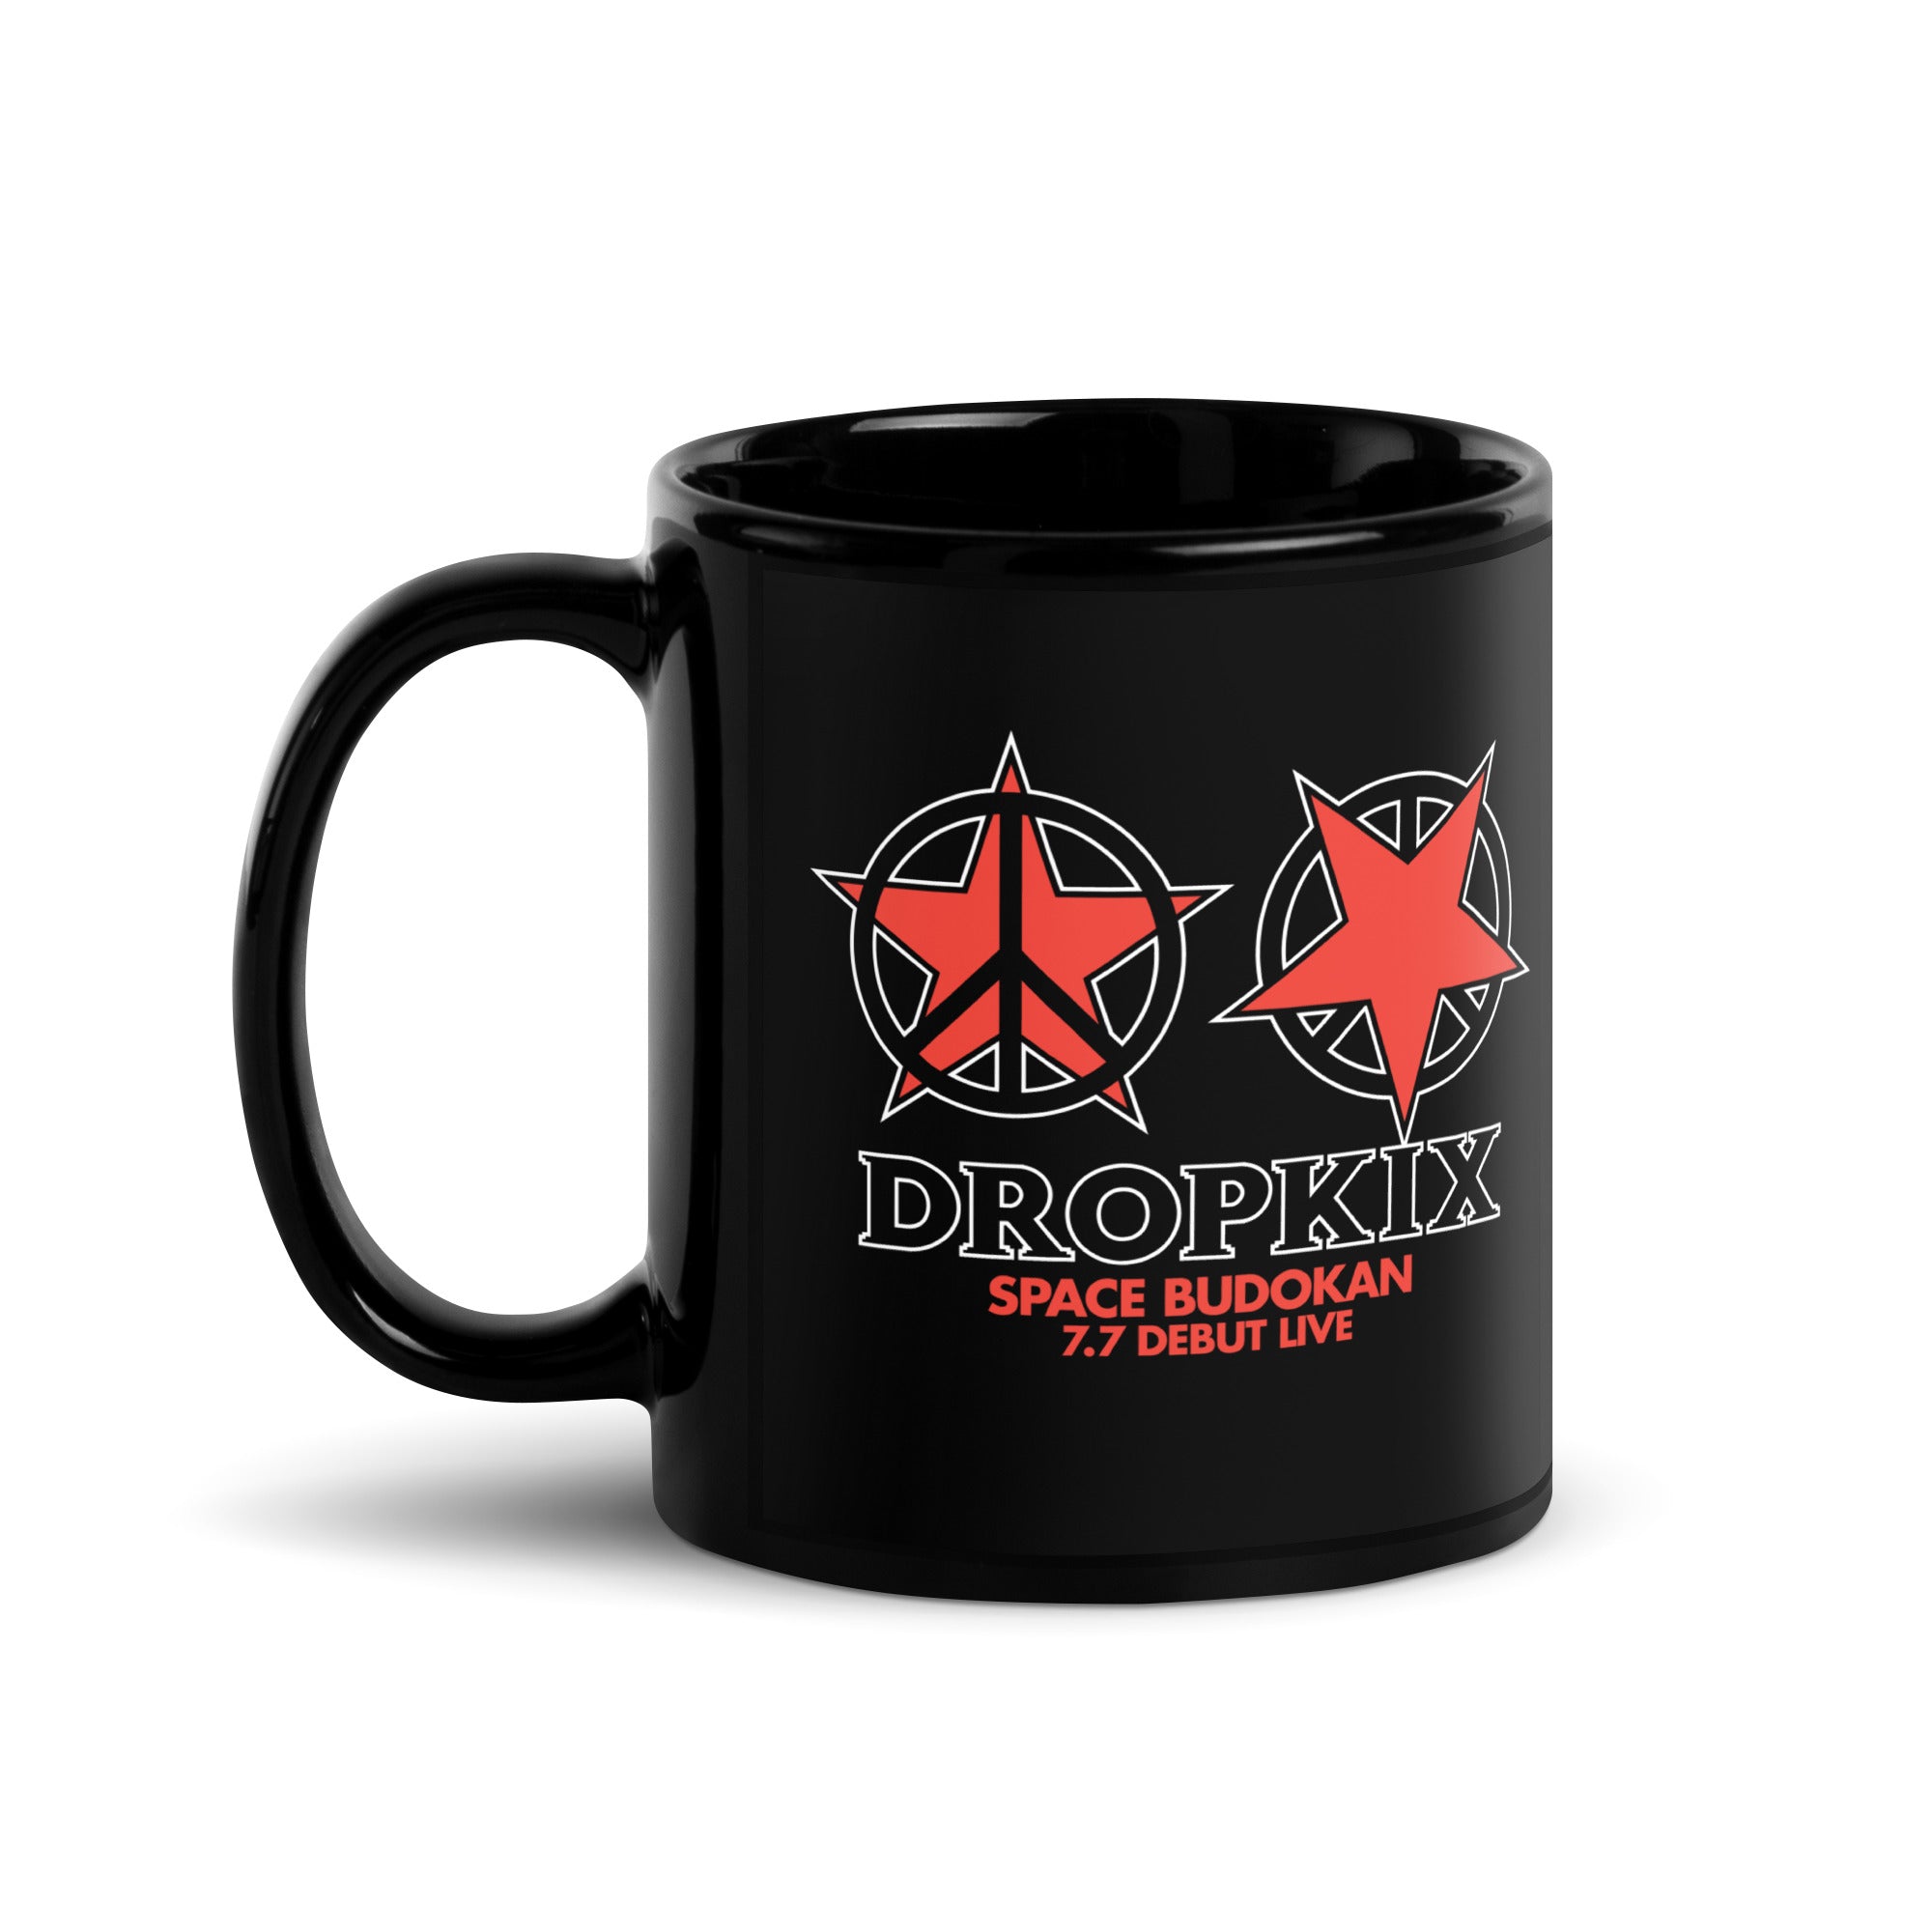 Dropkix Mug